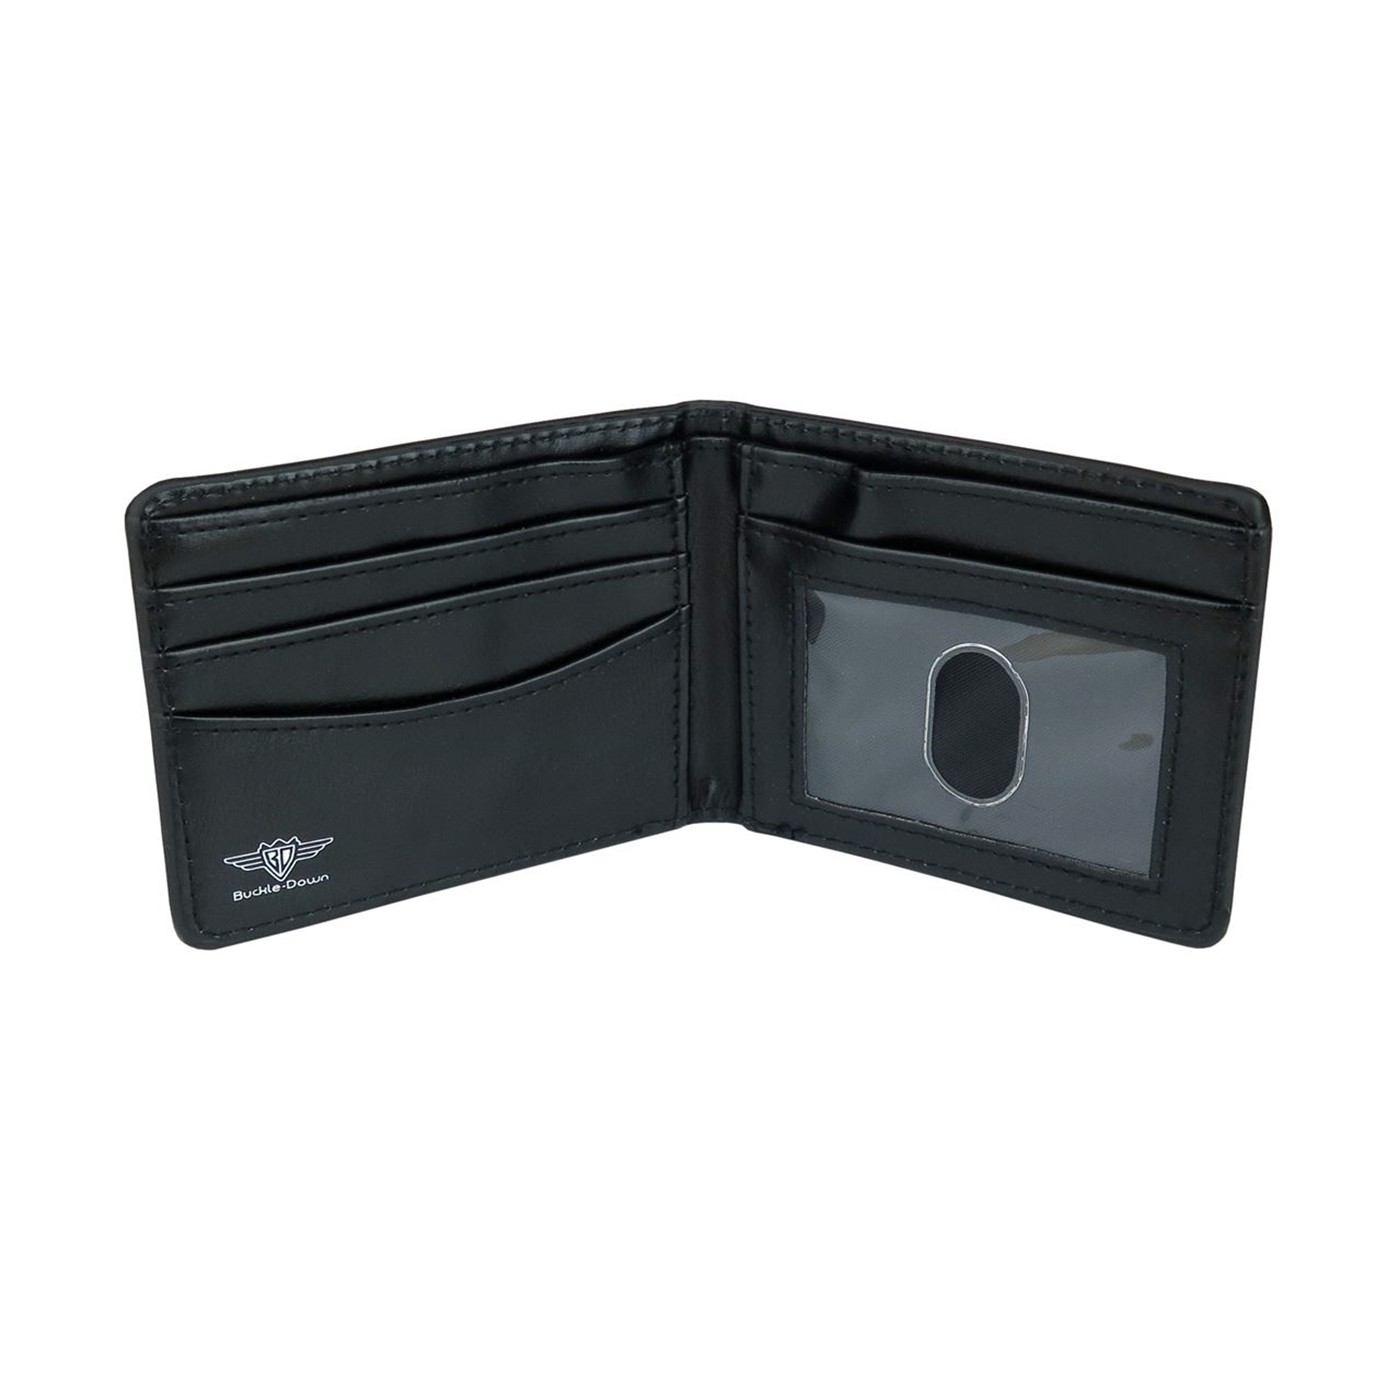 Loki Scepter Bi-Fold Wallet